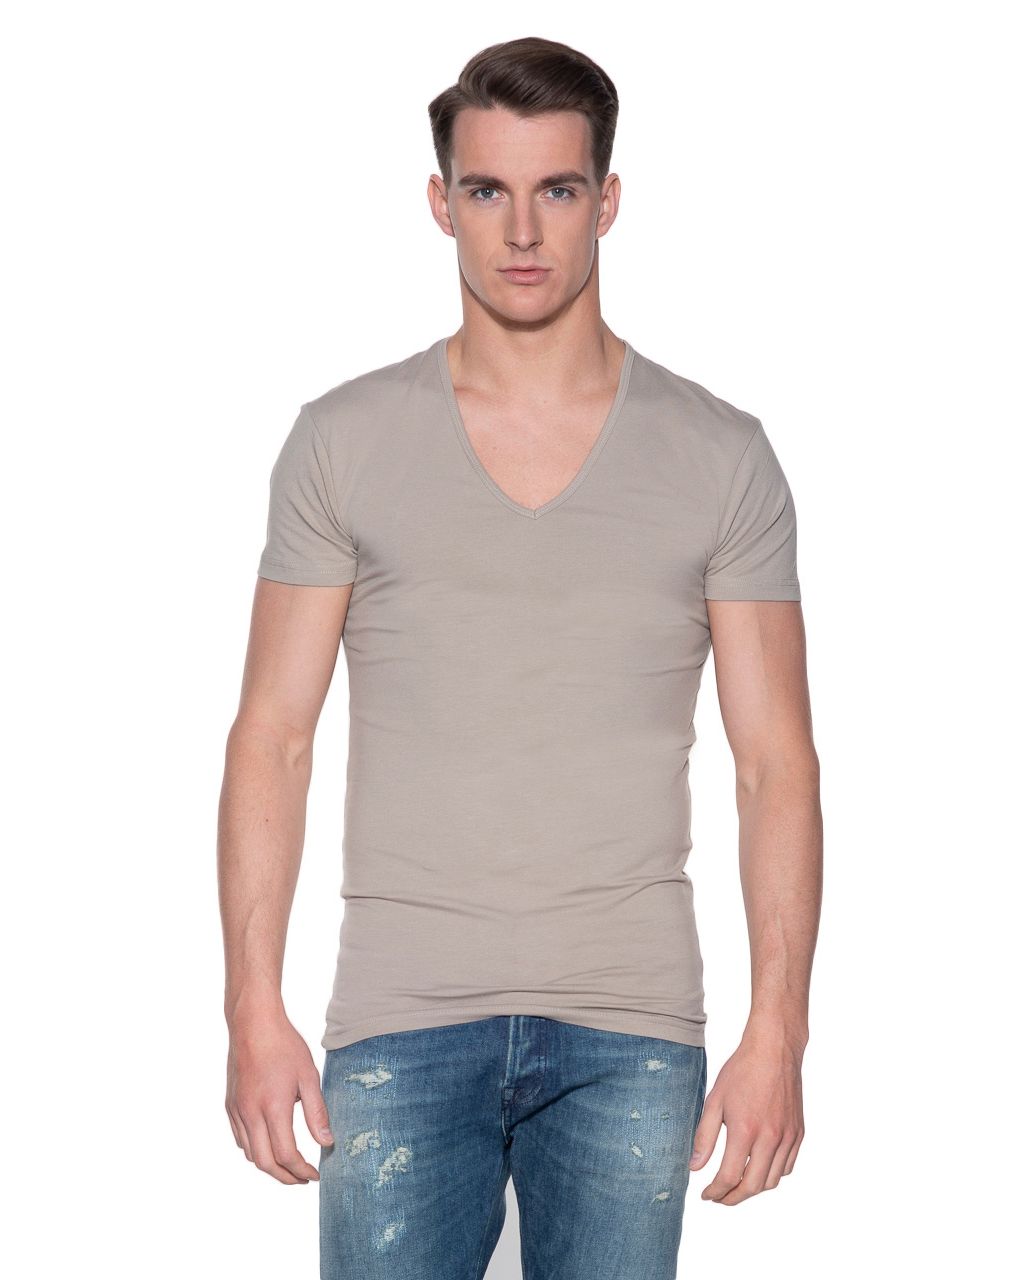 Beknopt zuiden Moskee Slater Stretch T-shirt Diepe V-hals 2-pack | Shop nu - Only for Men